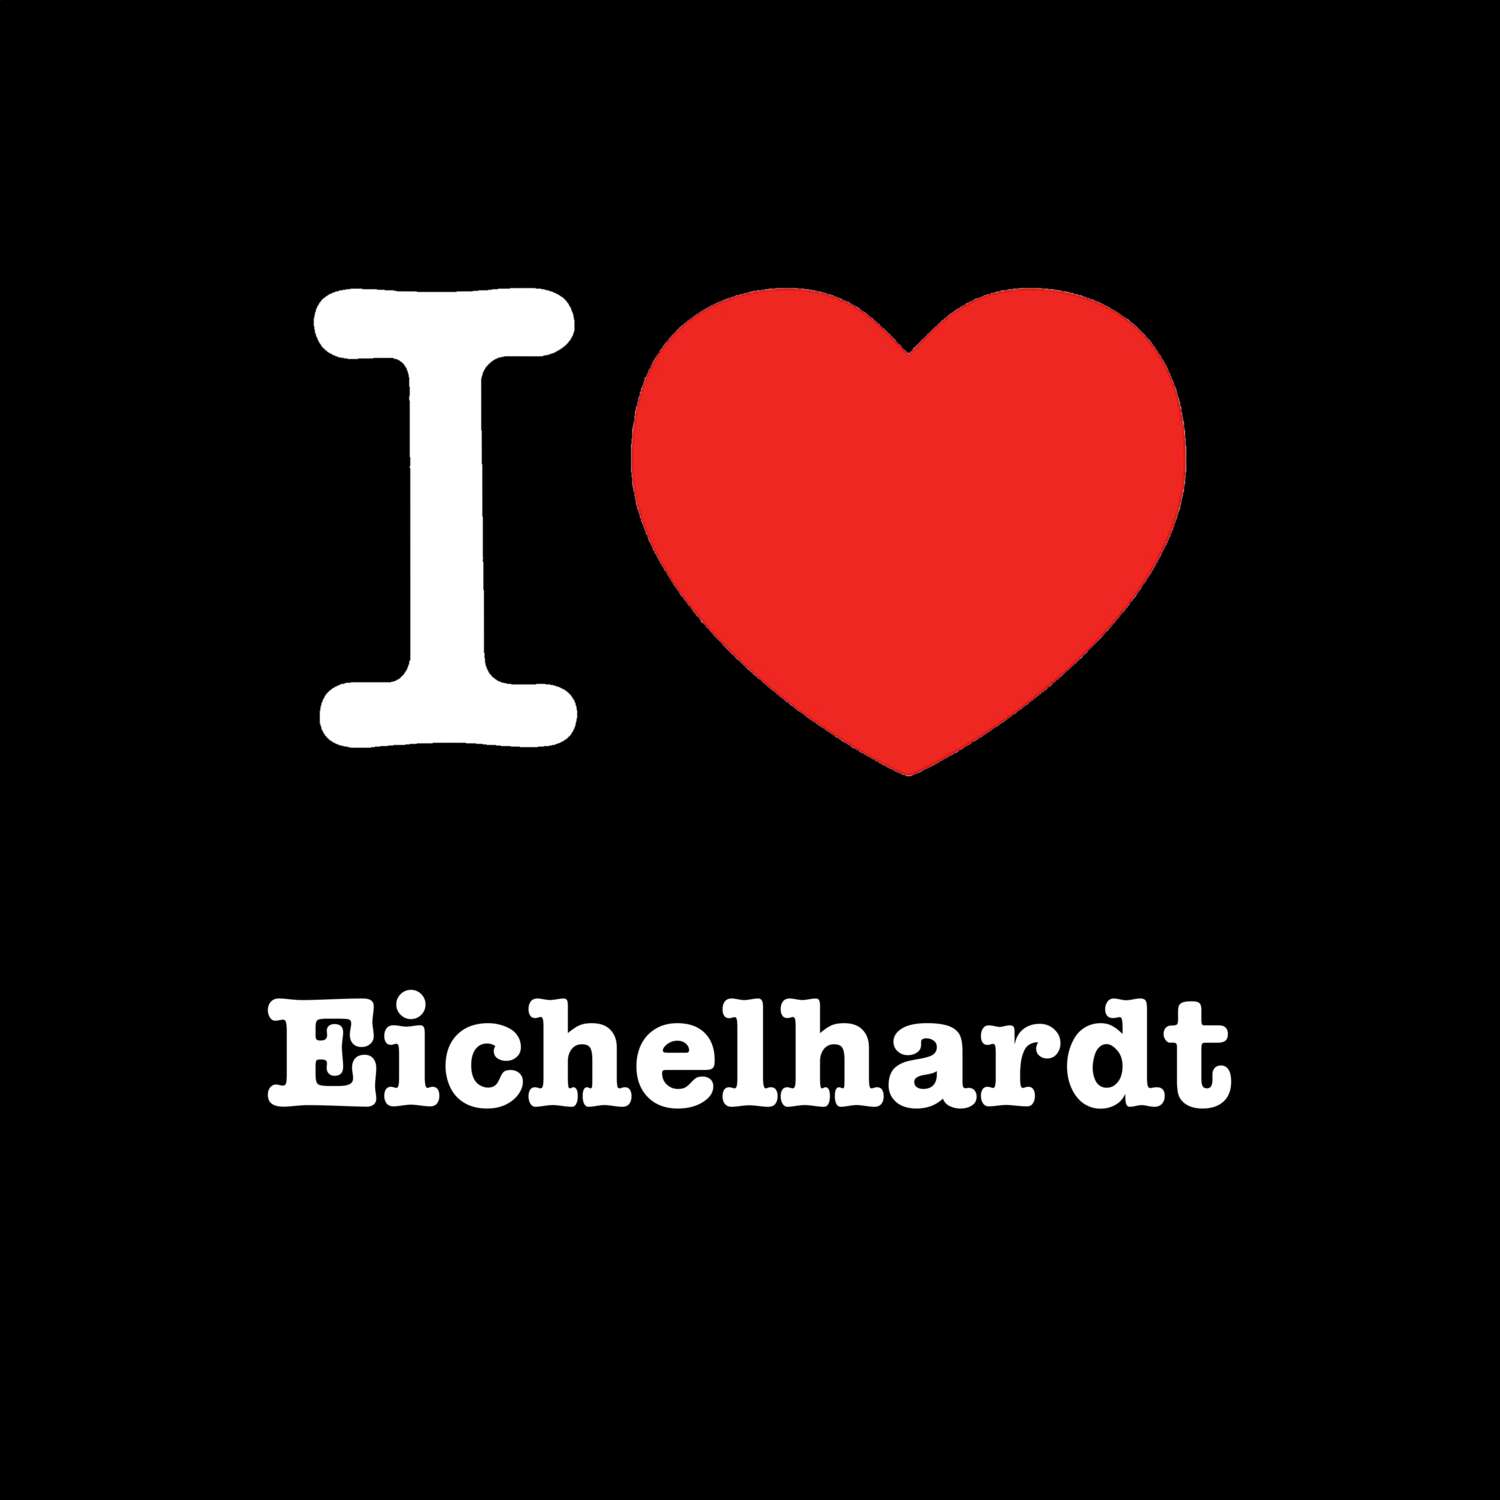 Eichelhardt T-Shirt »I love«